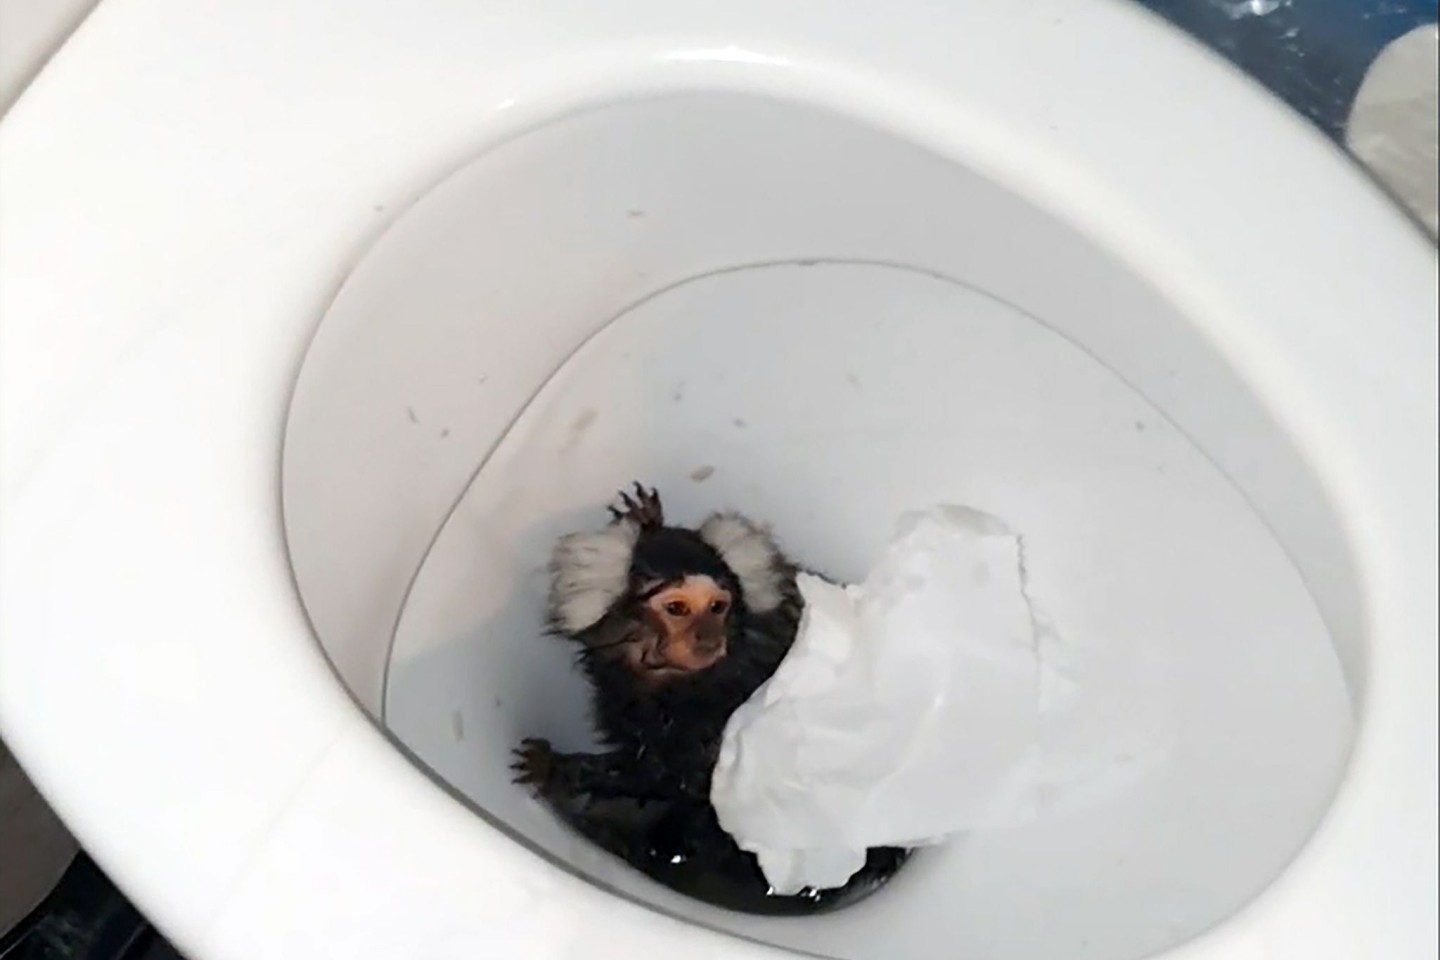 Tierschützer in Großbritannien haben die Krallenäffchen-Dame Milly gerettet. Ihre Besitzerin hatte versucht, sie in der Toilette herunterzuspülen.